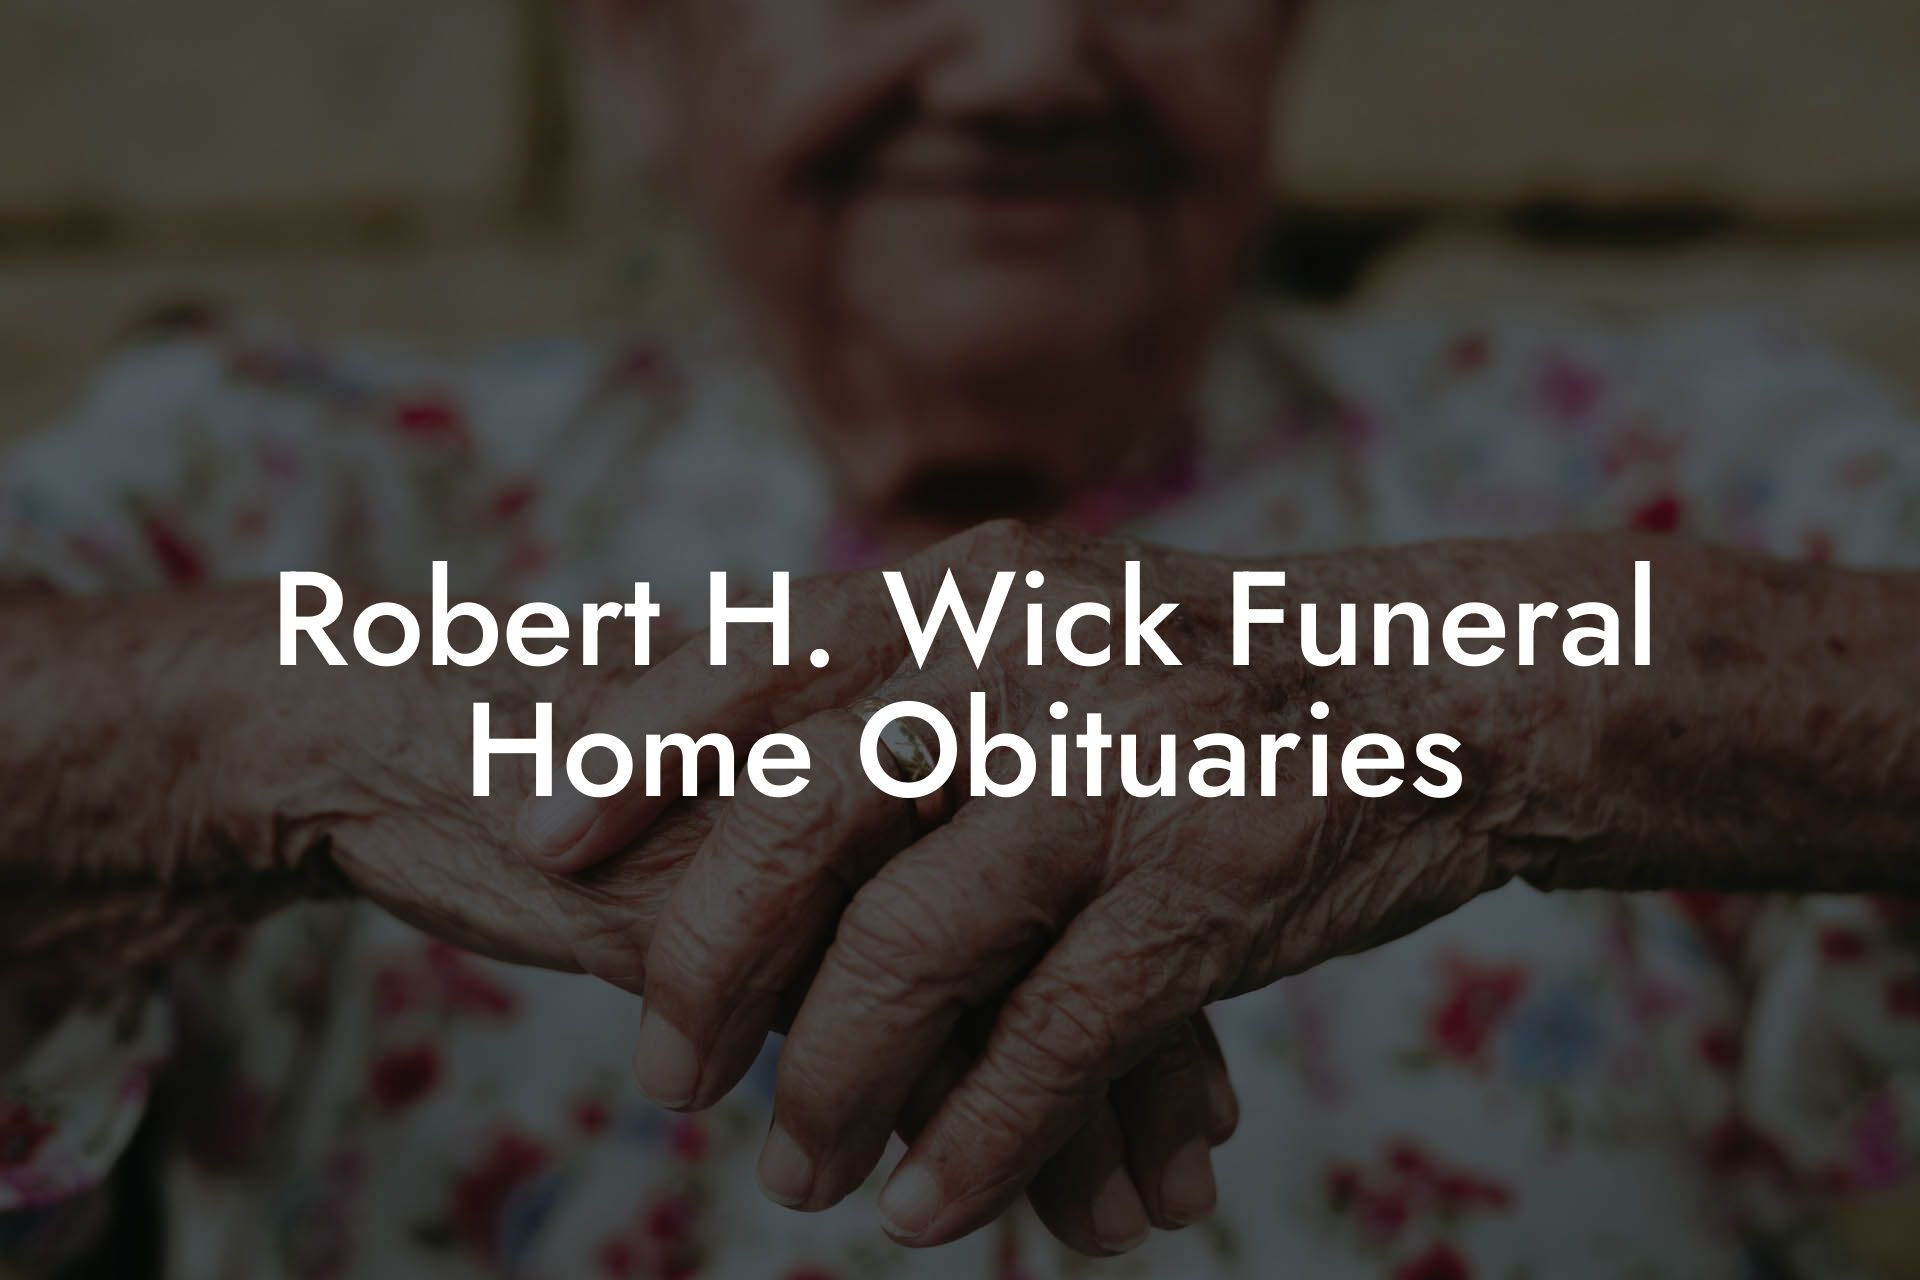 Robert H. Wick Funeral Home Obituaries